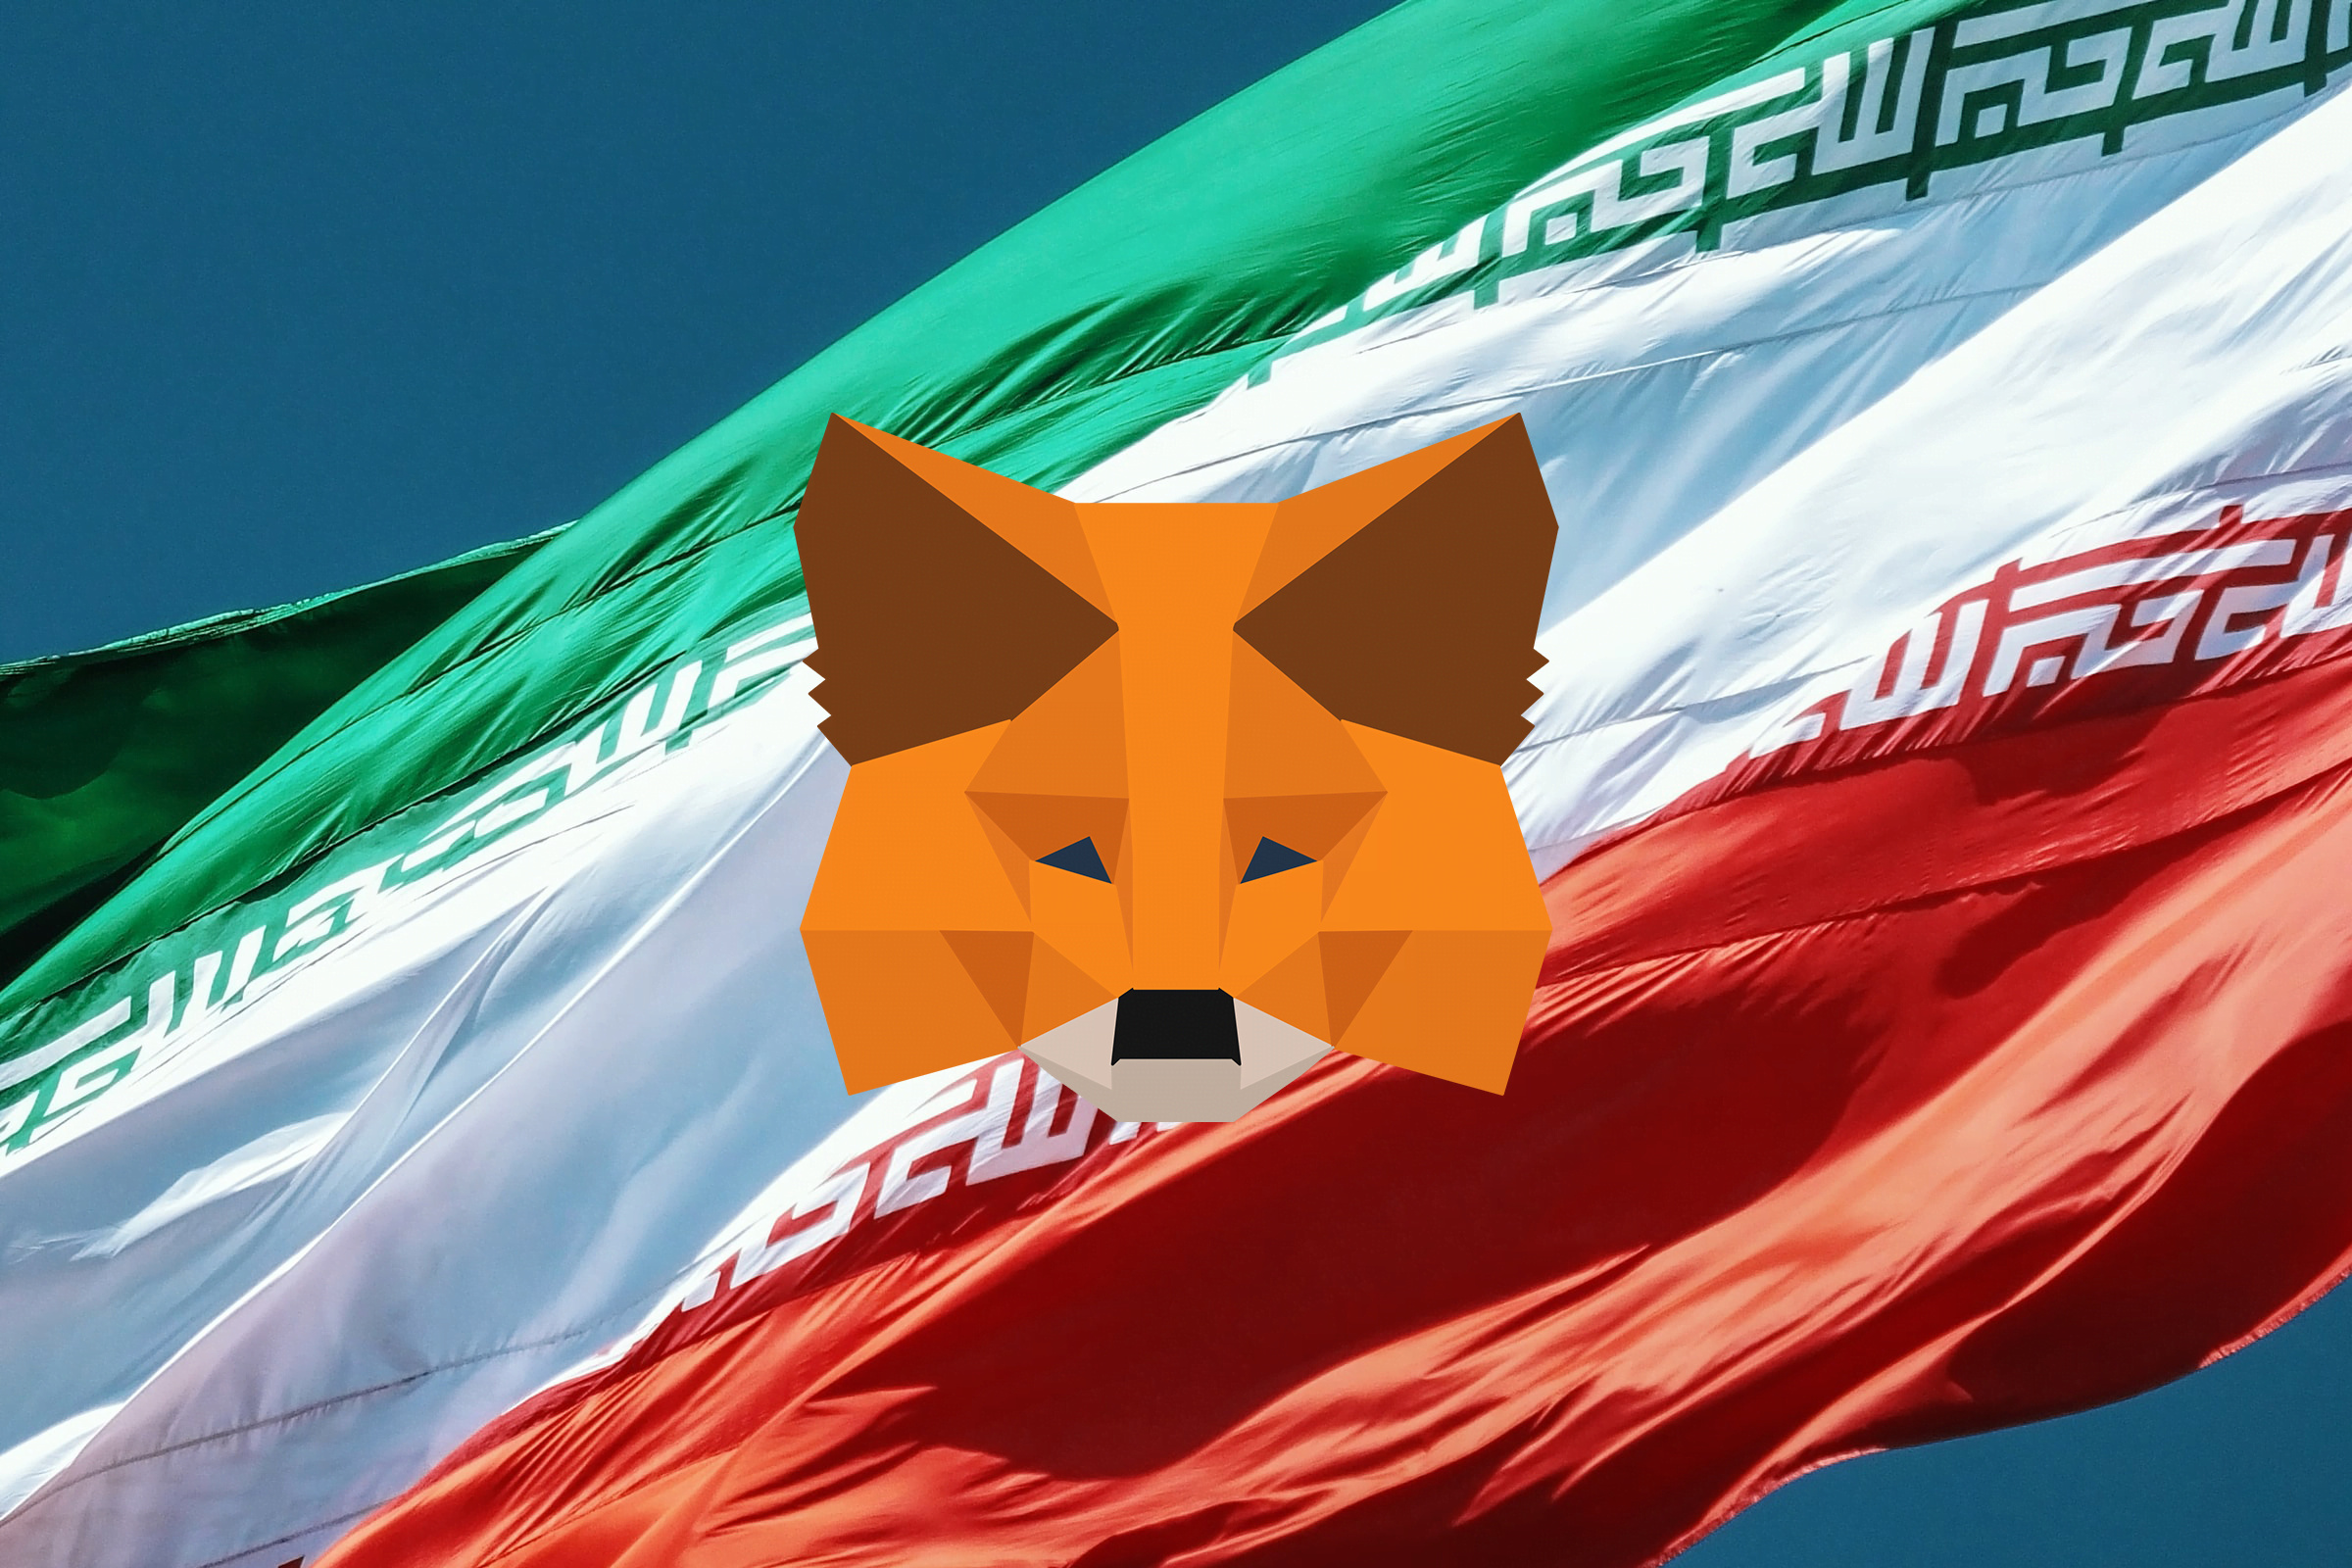 Obуvatelé Venezuelу, Íránu a Libanonu se nemohli přihlásit do MetaMask